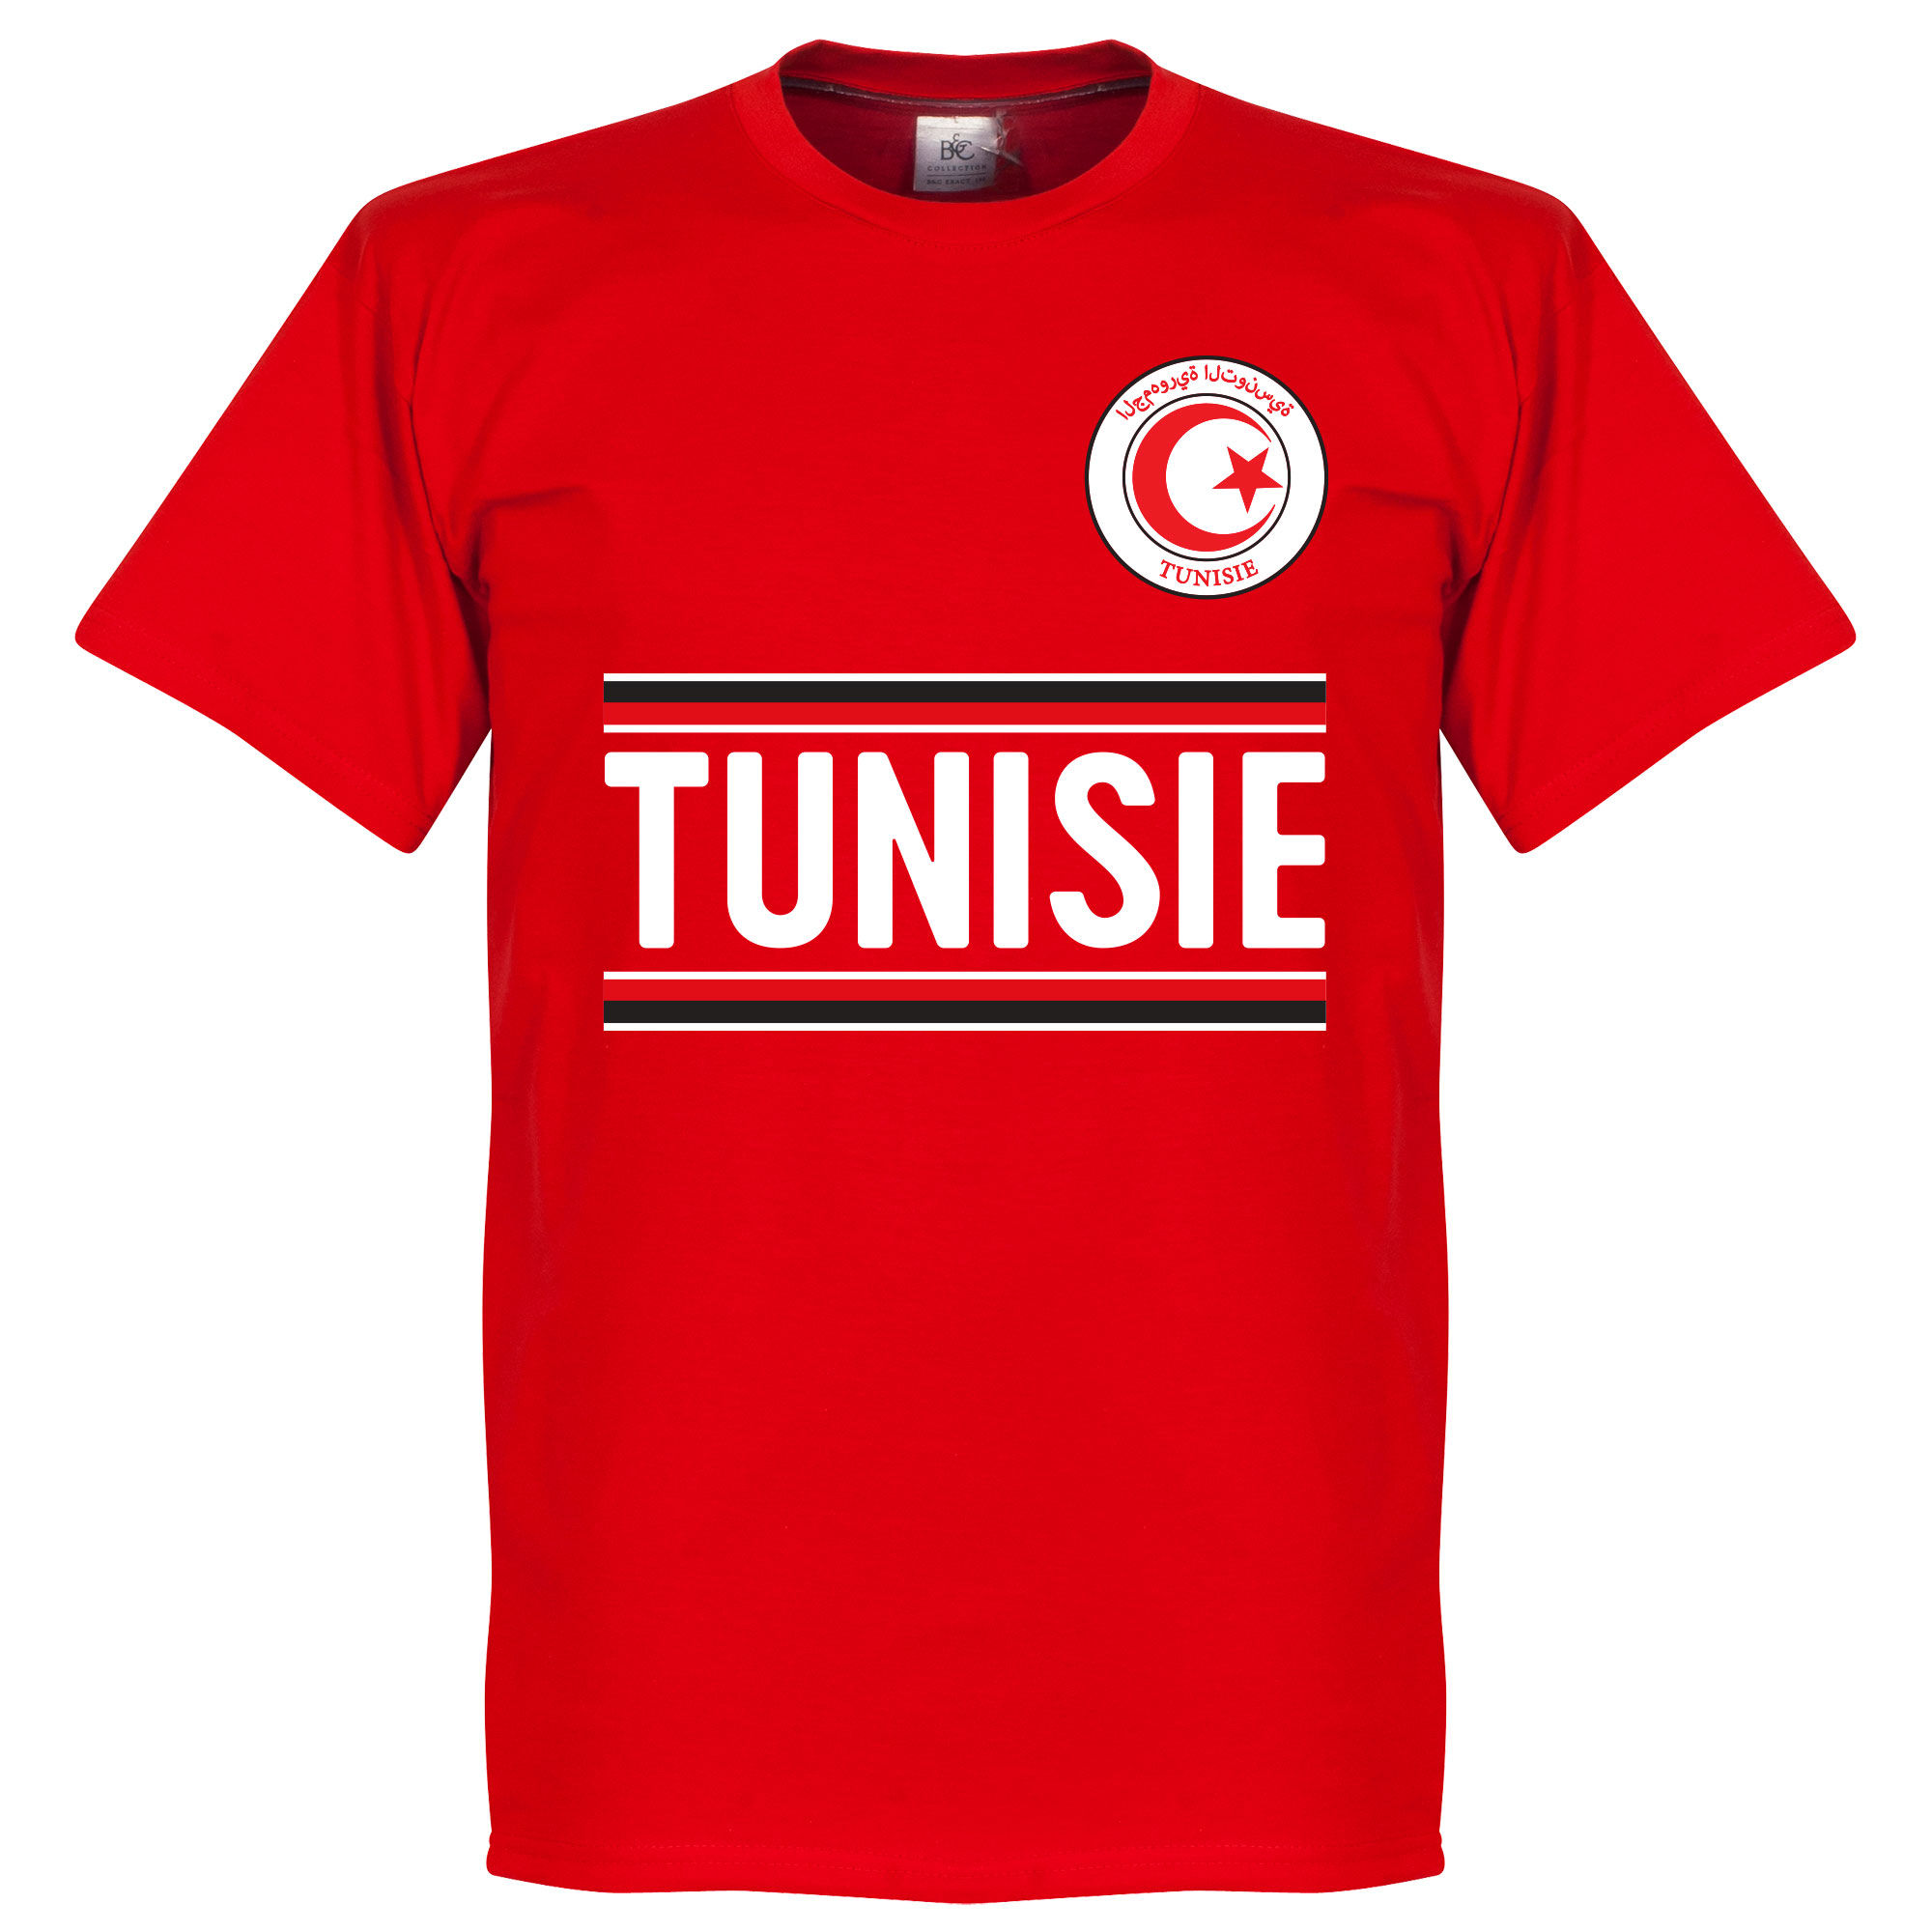 Tunisko - Tričko - červené